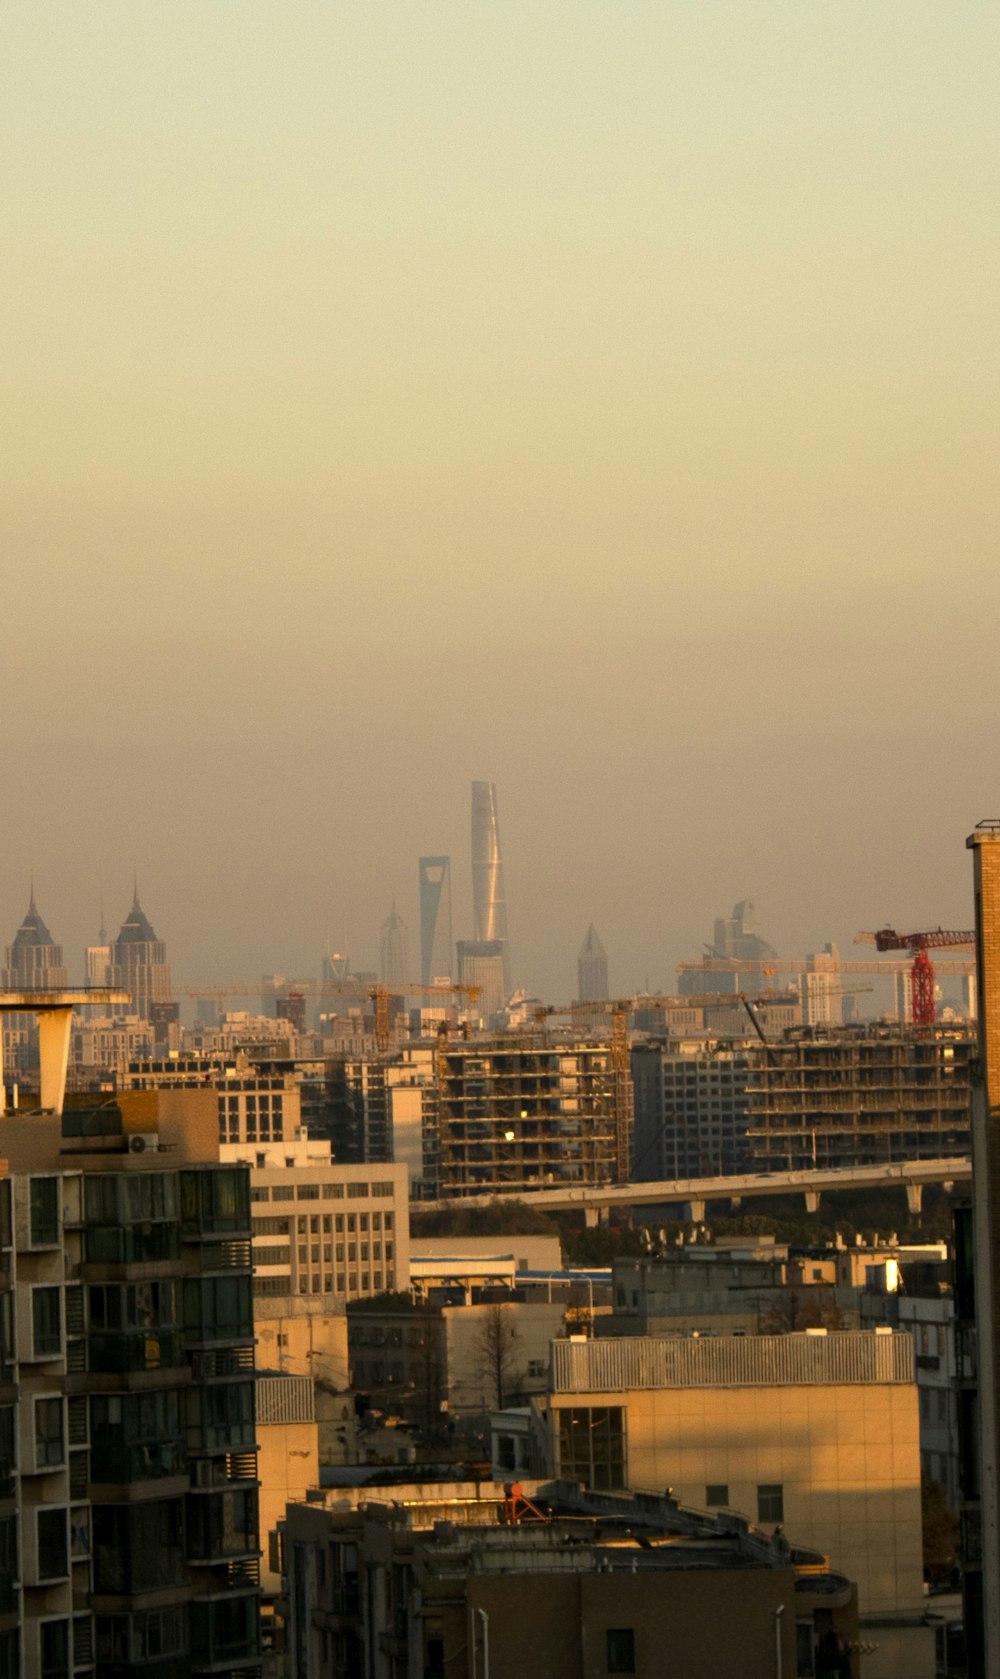 Una vista de una ciudad desde un edificio de gran altura